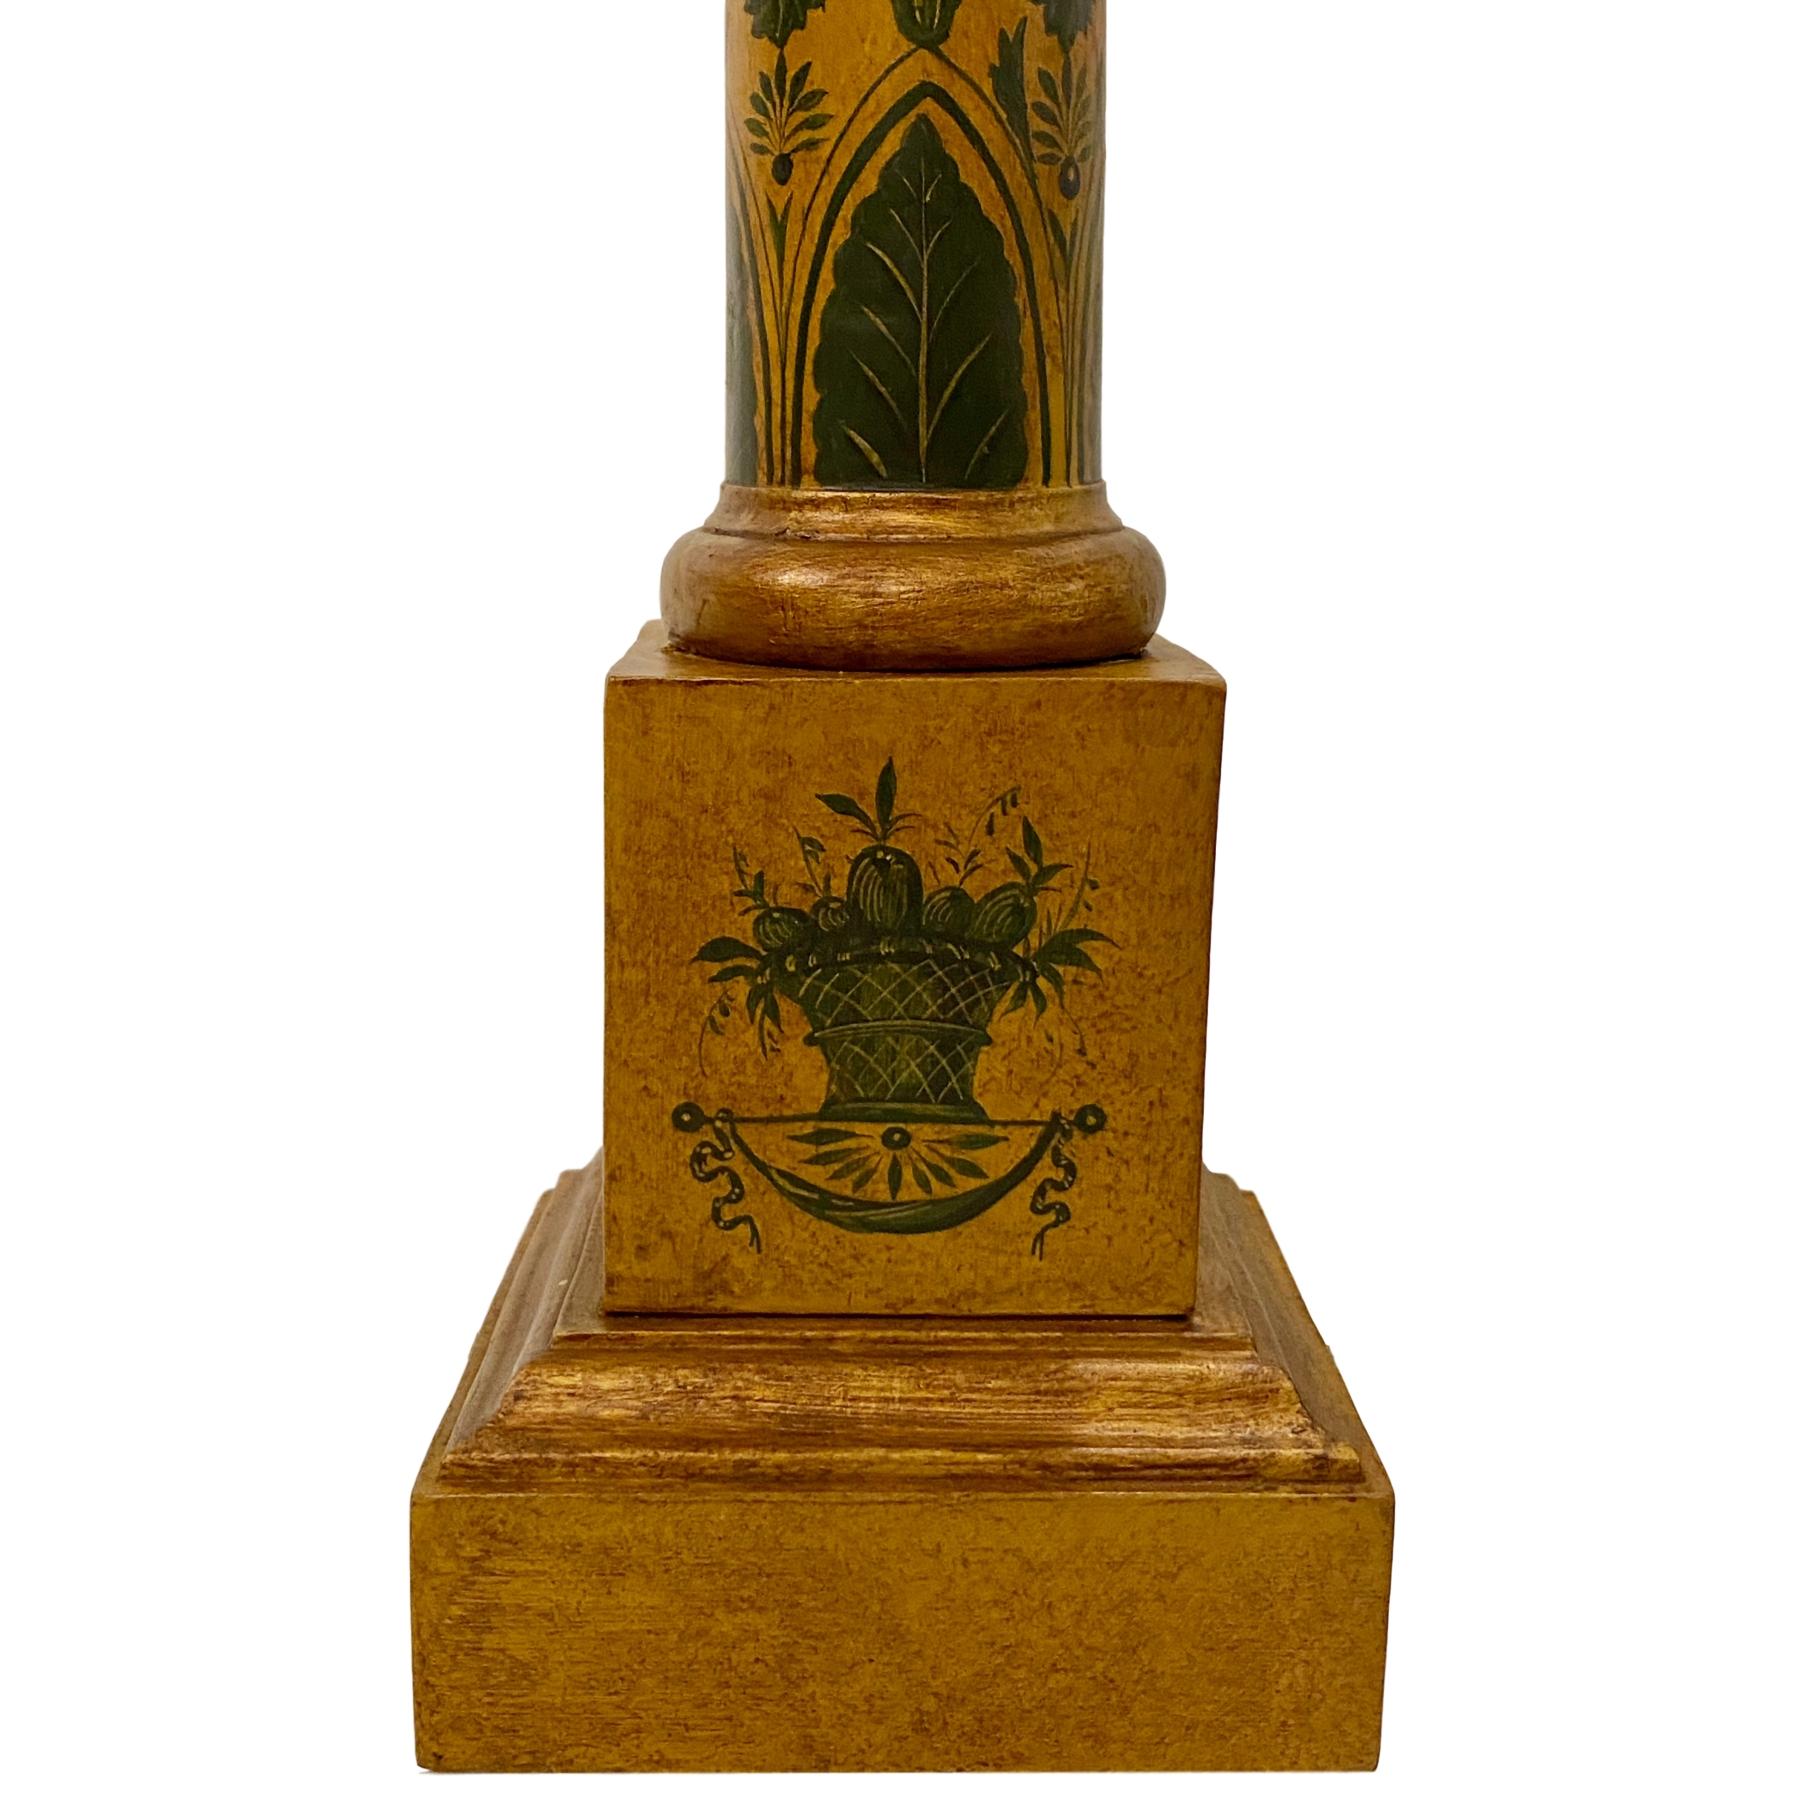 Une paire de lampes de table à colonne en bois peint de style Empire français des années 1930.

Mesures :
Hauteur du corps : 17
Hauteur jusqu'au support de l'abat-jour : 28